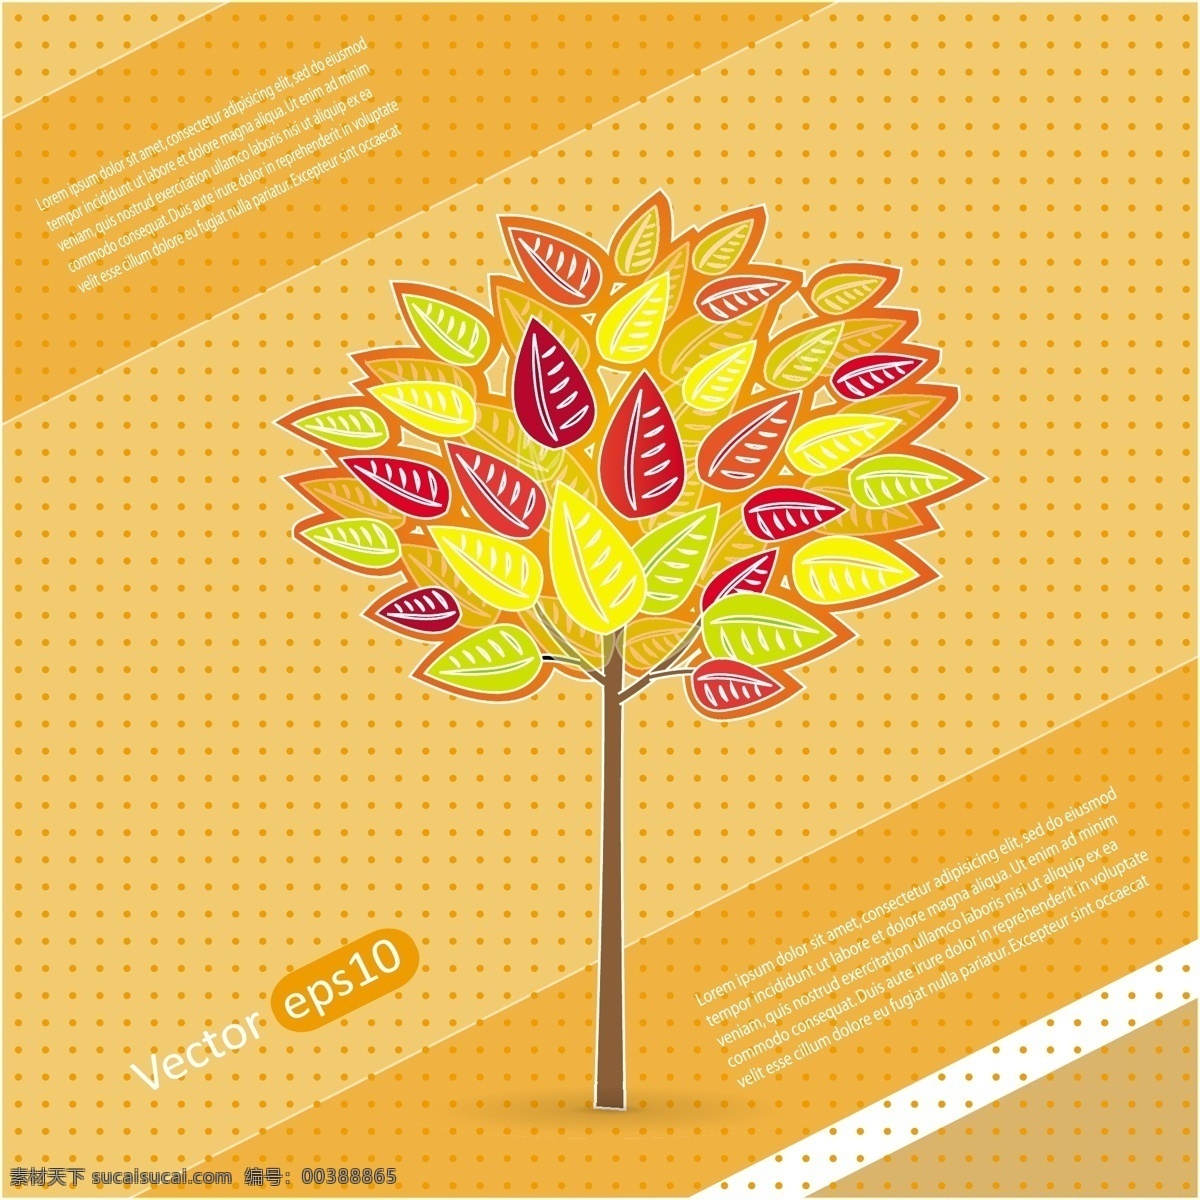 手绘 花朵 矢量 精致 橙色 黄色 圆点 矢量素材 设计素材